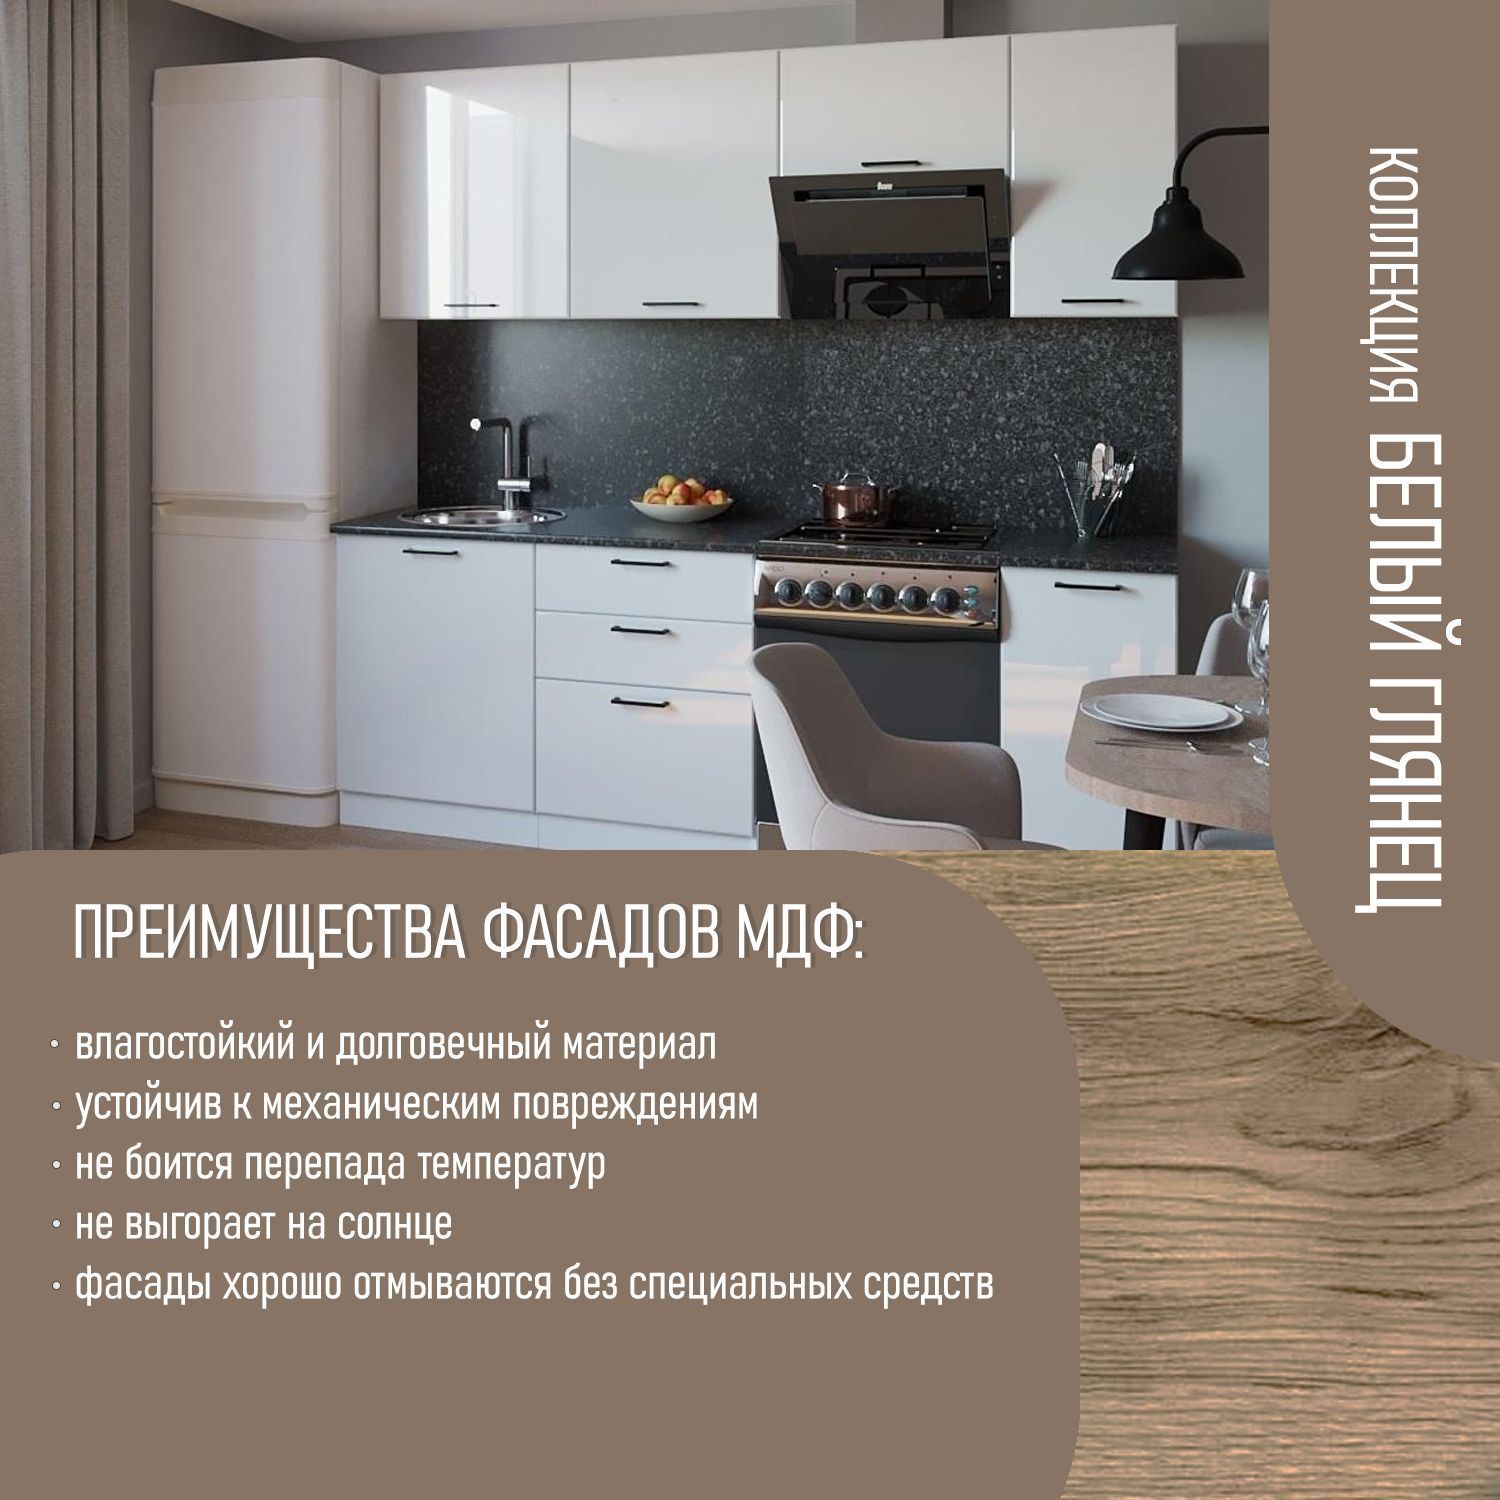 Ремонт кухни под ключ. 22 фото и цены в Москве